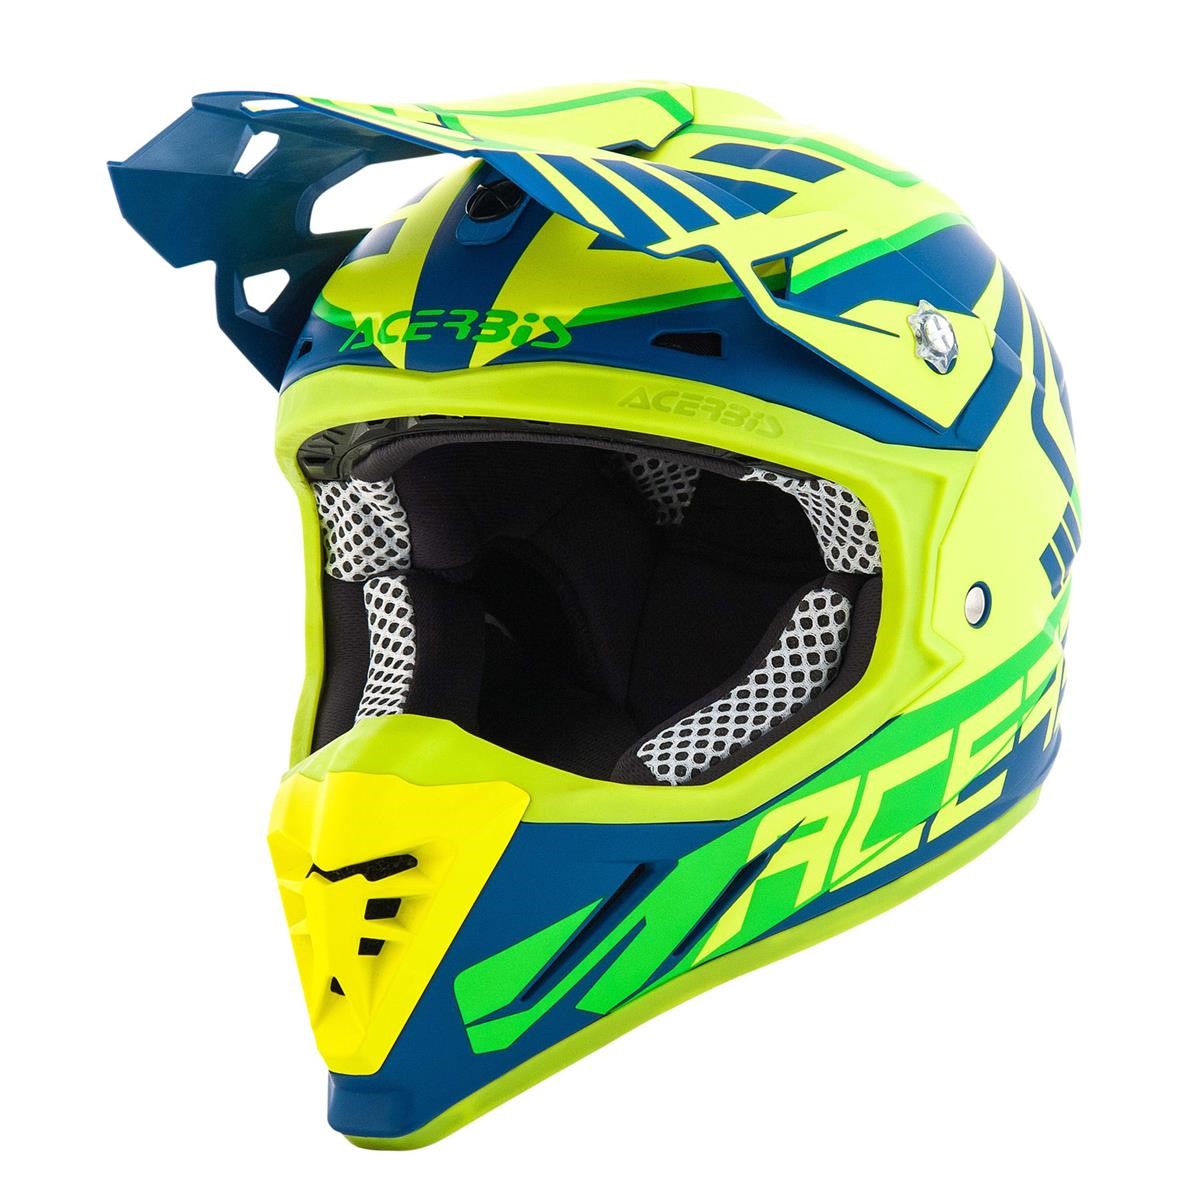 Acerbis Helmet Profile 3.0 Skinviper - Fluo Yellow/Blue